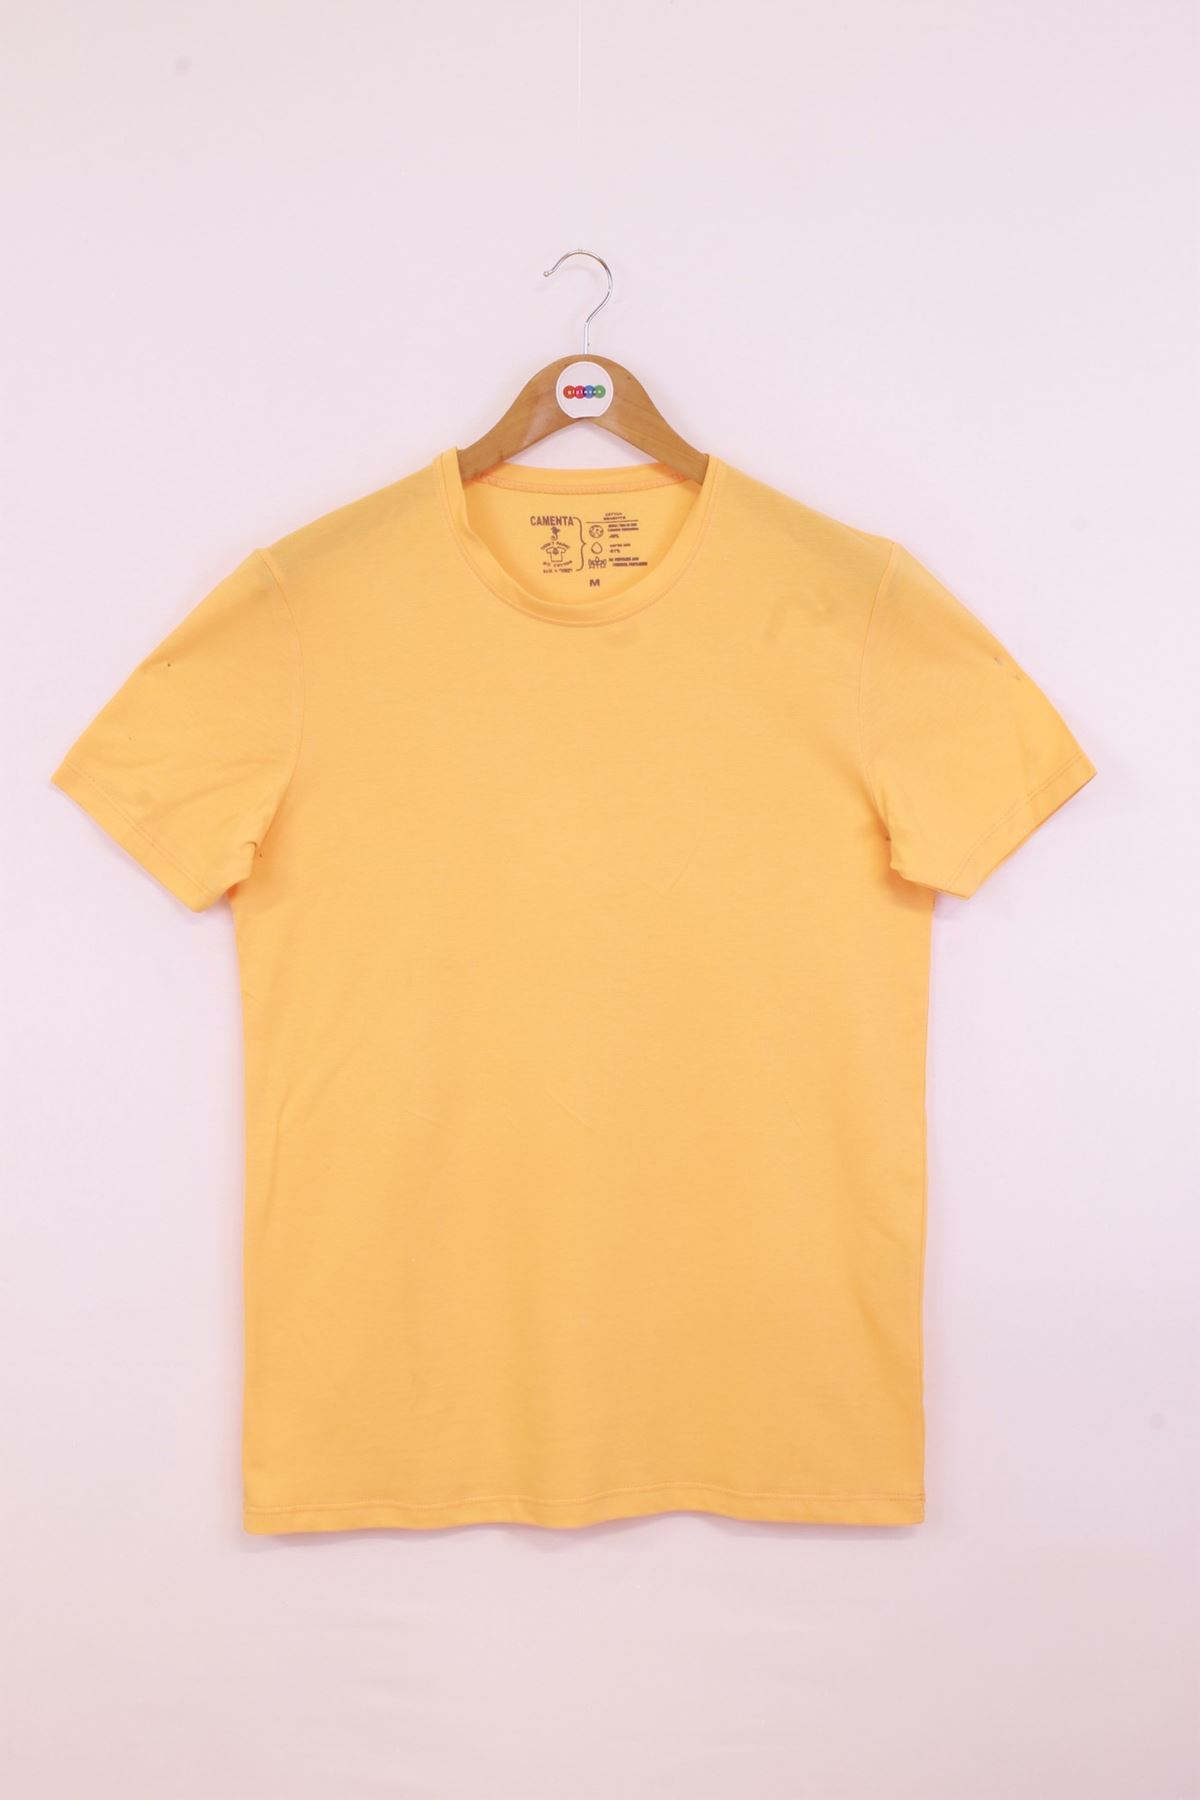 Giyinsen Erkek Sarı  Tişört - 23YL71S95002